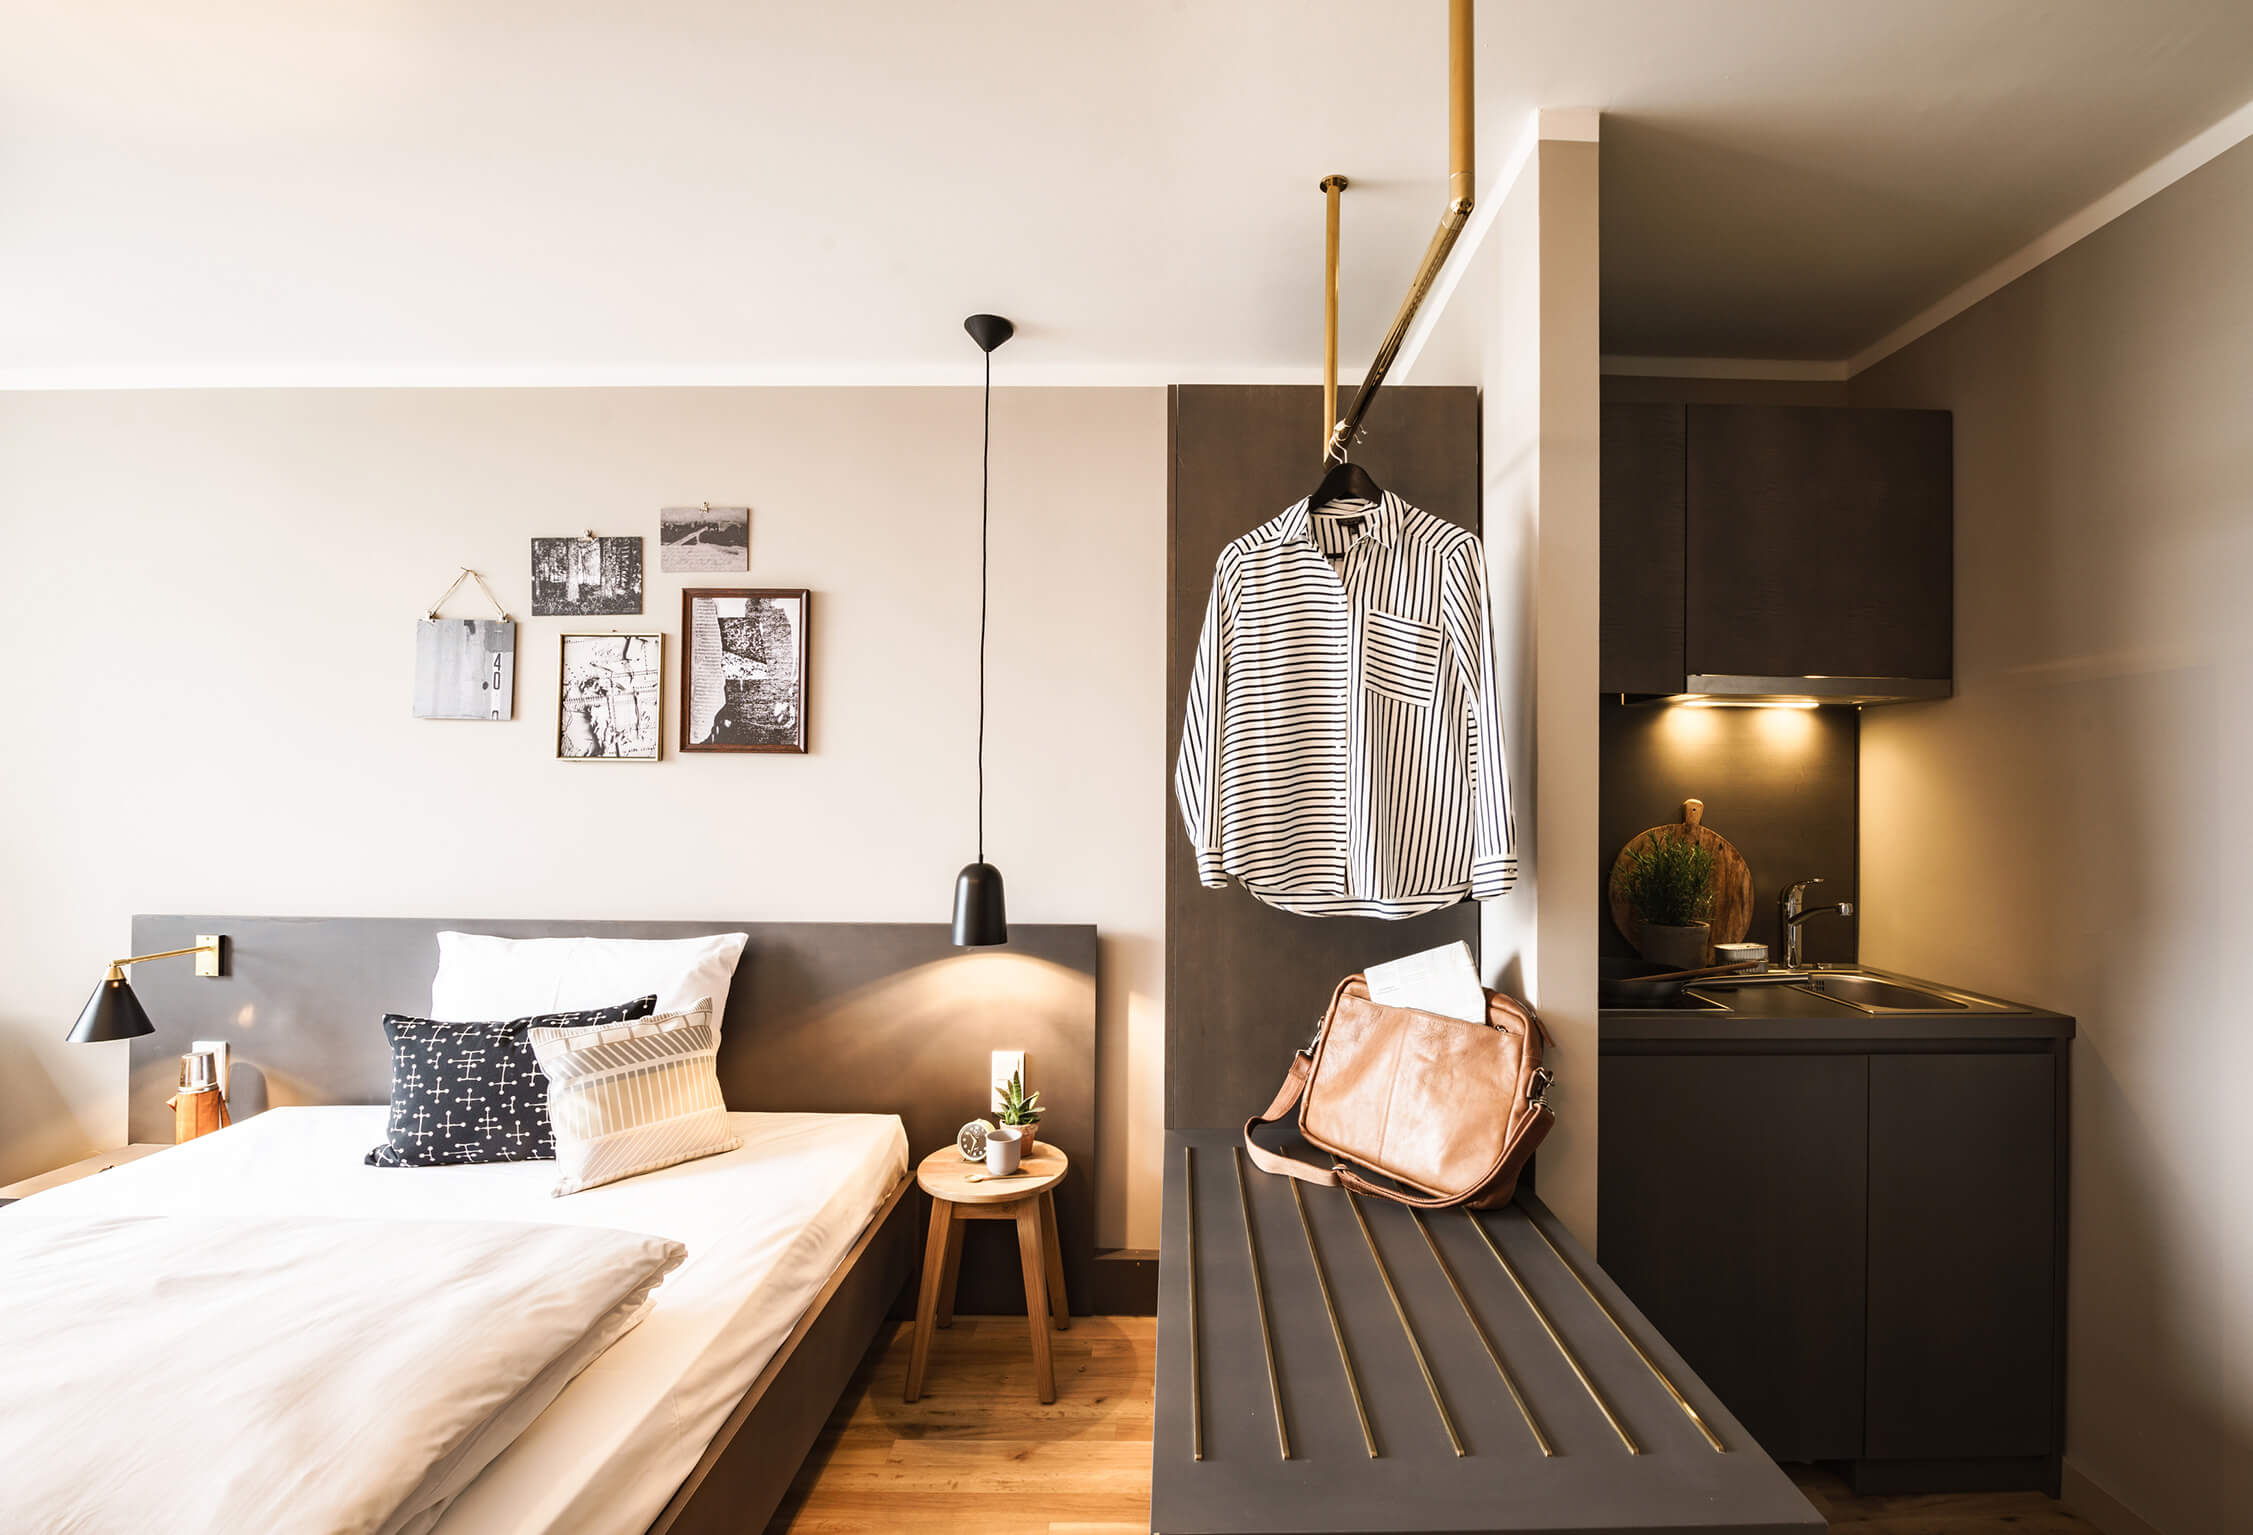 Helles Zimmer mit Holzboden. Links ein bequemes Bett mit Kissen und Bildern an der Wand, mittig ein goldenes Designelement als Garderobe, rechts leicht abgetrennt, eine beleuchtete Kitchenette. 